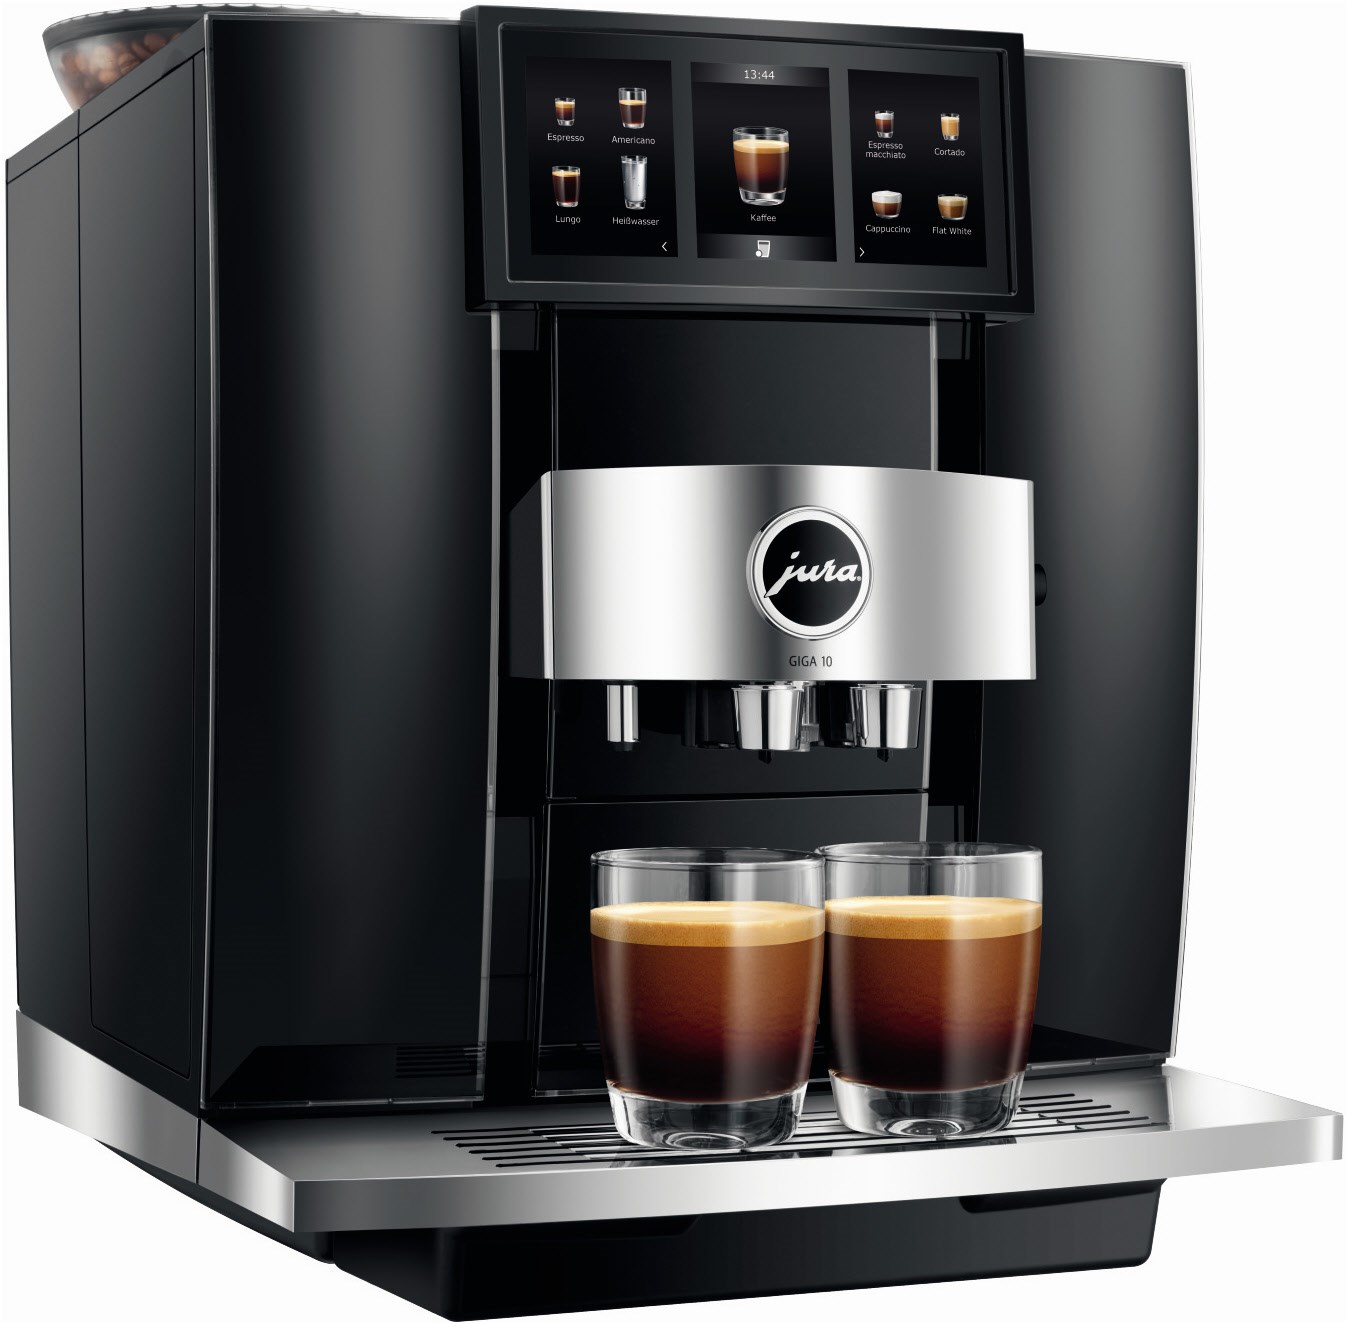 GIGA 10 Kaffee-Vollautomat Diamond Black (EA)